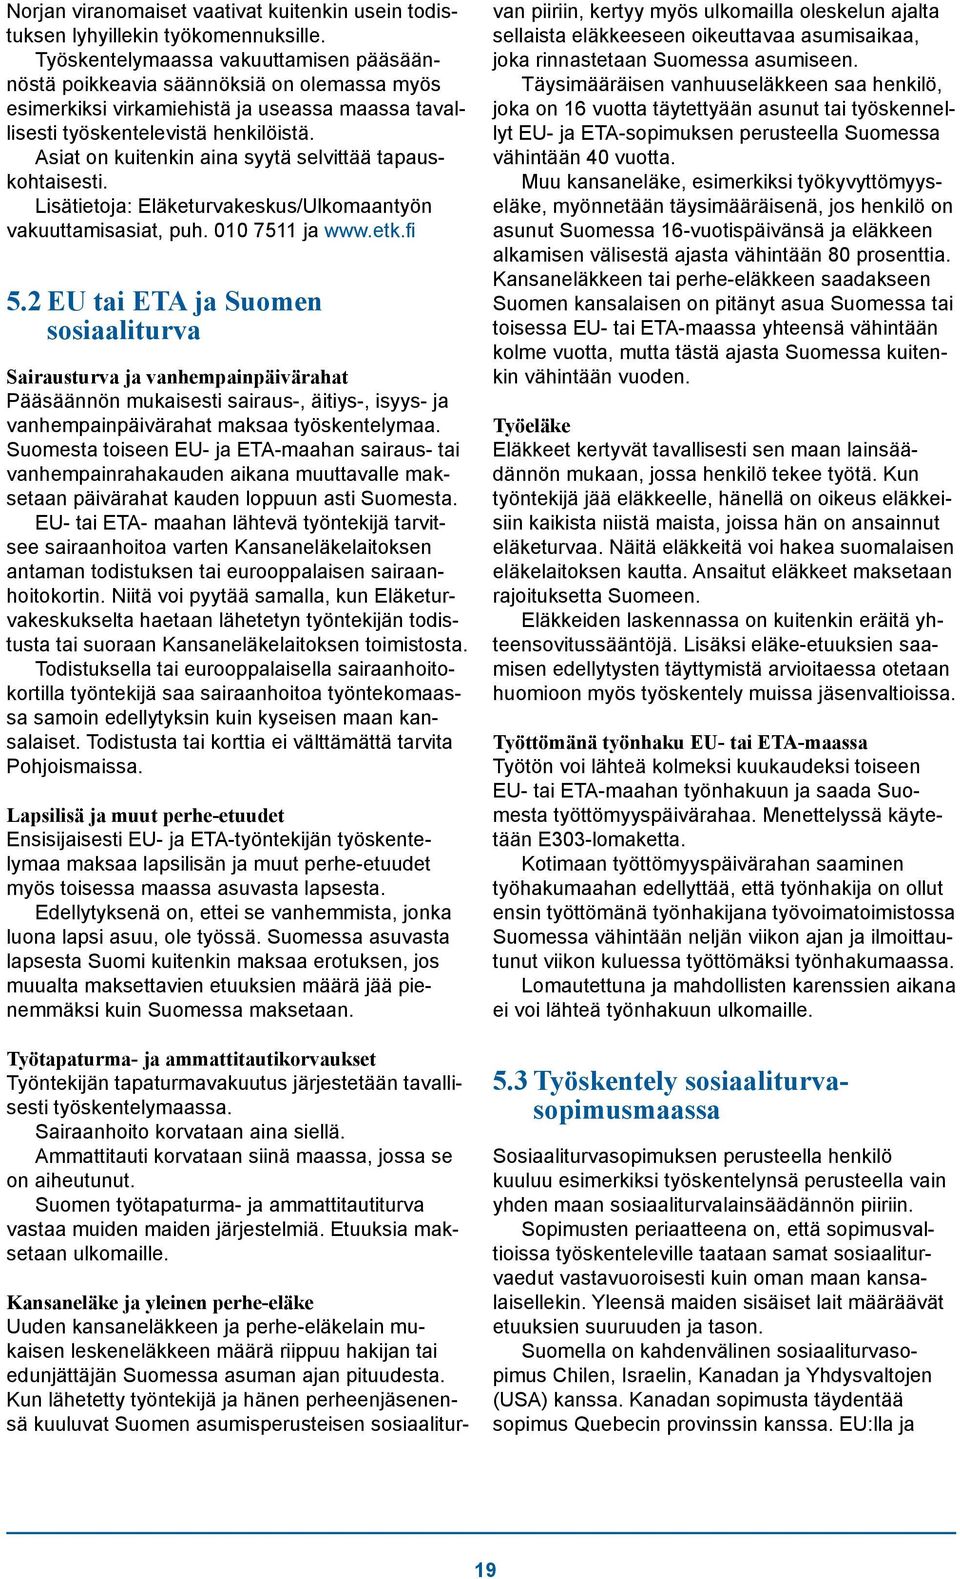 Asiat on kuitenkin aina syytä selvittää tapauskohtaisesti. Lisätietoja: Eläketurvakeskus/Ulkomaantyön vakuuttamisasiat, puh. 010 7511 ja www.etk.fi 5.